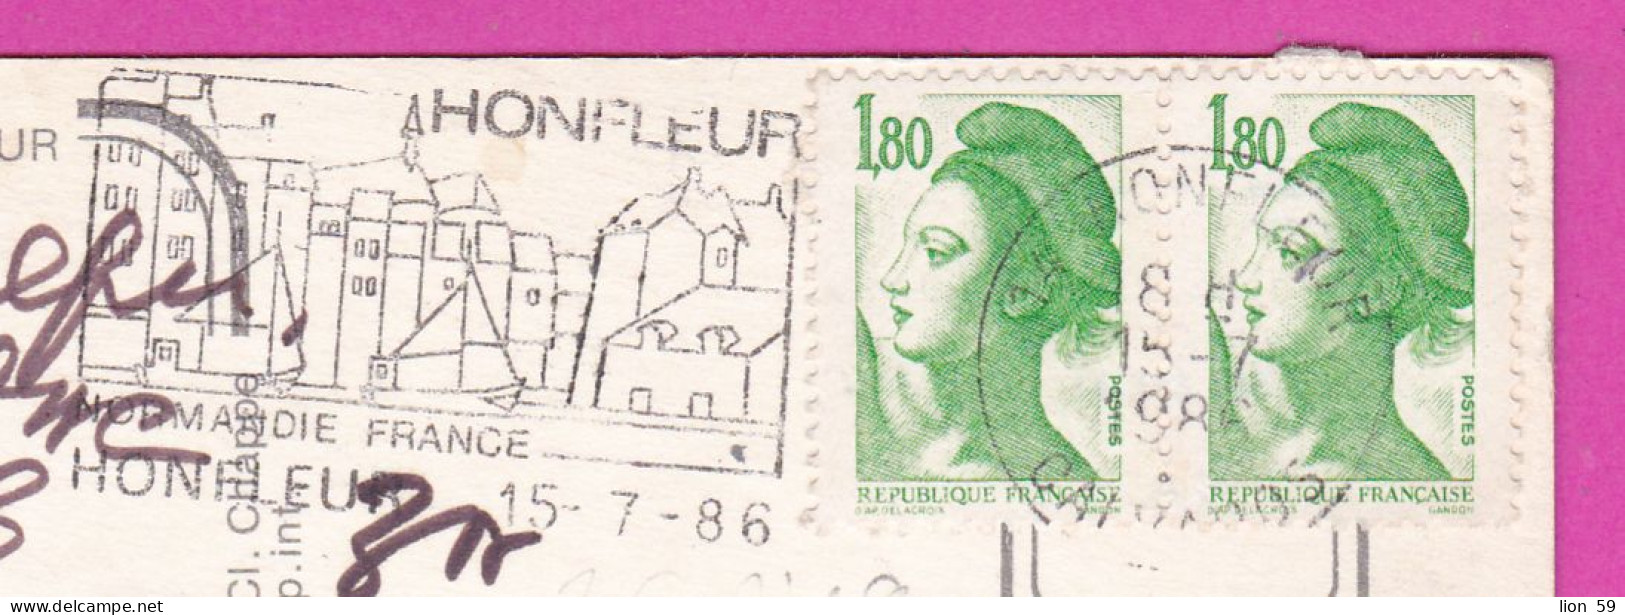 294214 / France - Normandie , HONFLEUR PC 1985 Serres-Caste USED 1.80+1.80 Fr. Liberty Of Gandon , Flamme HONFLEUR  Norm - 1982-1990 Liberté (Gandon)